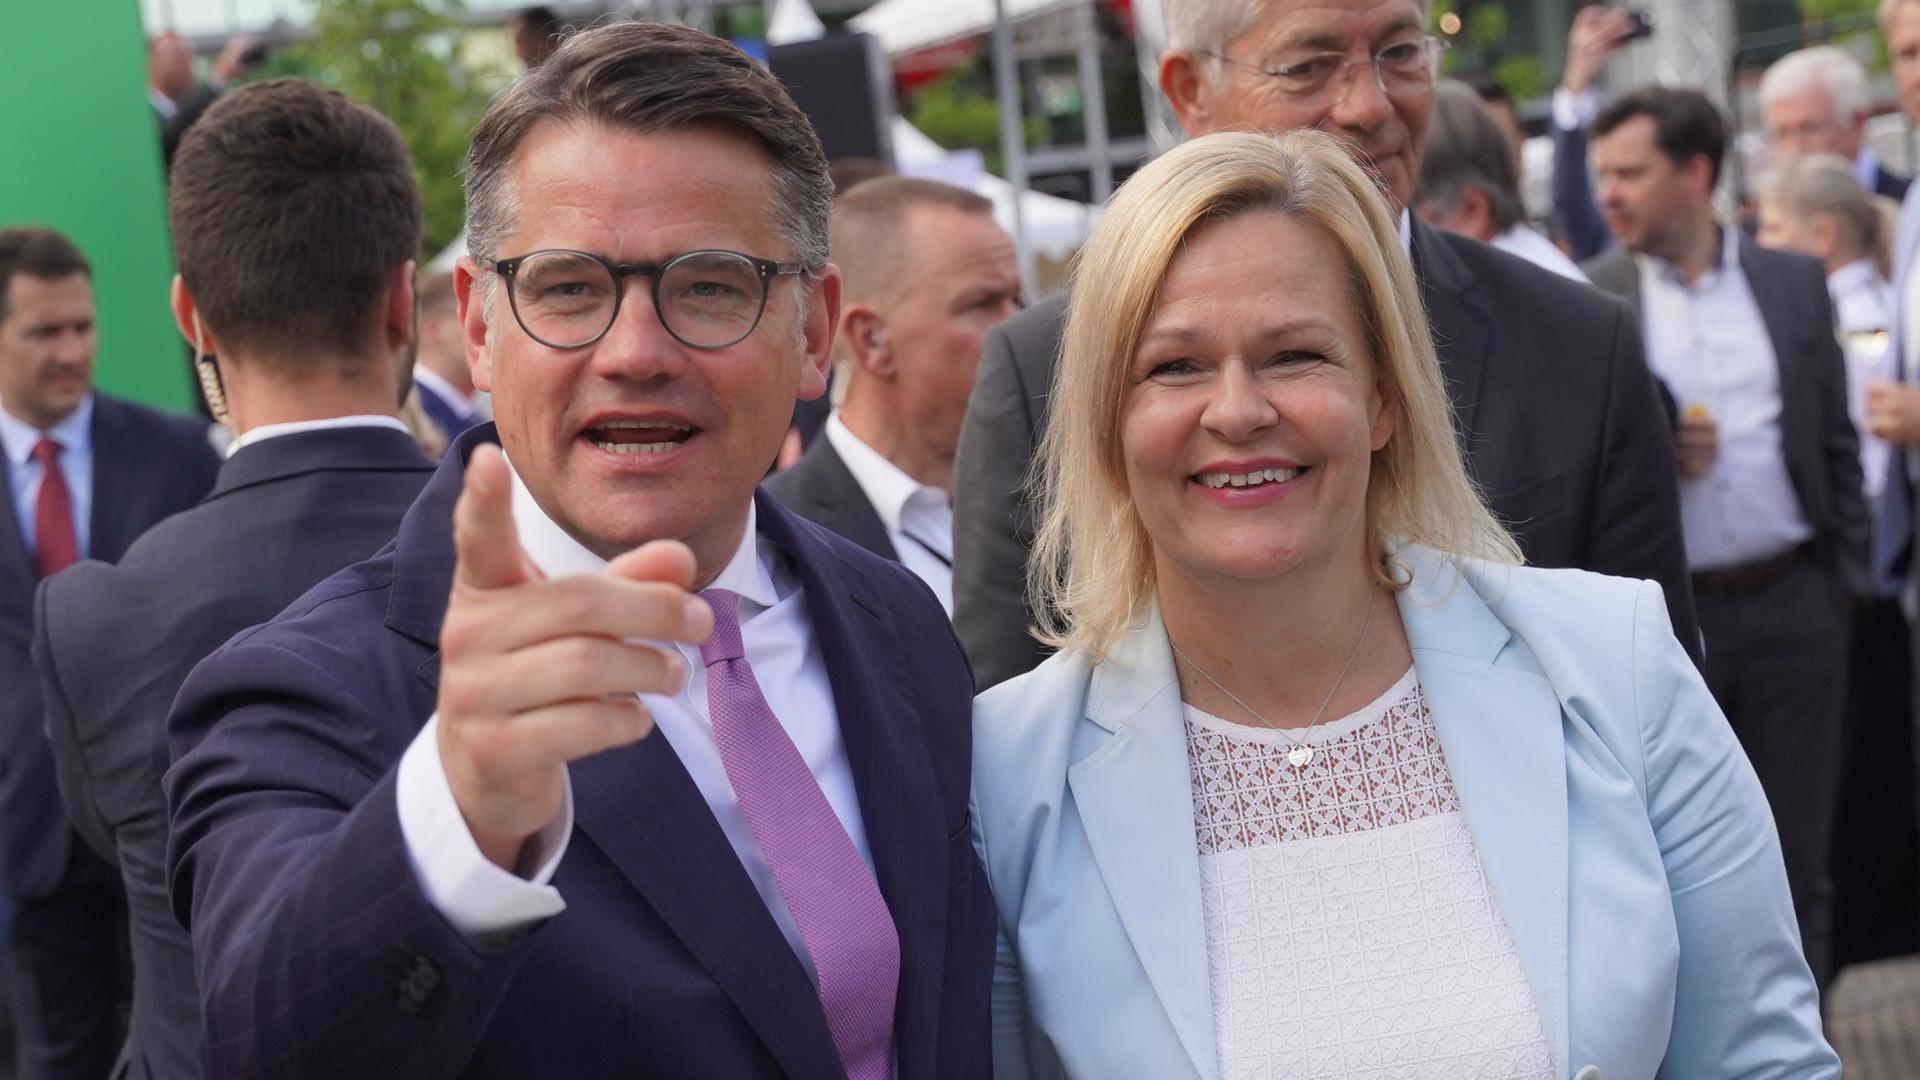 Boris Rhein (CDU), Hessischer Ministerpräsident, und Nancy Faeser (SPD), Bundesinnenministerin, beim "Hessenfest" in der Hessischen Landesvertretung.